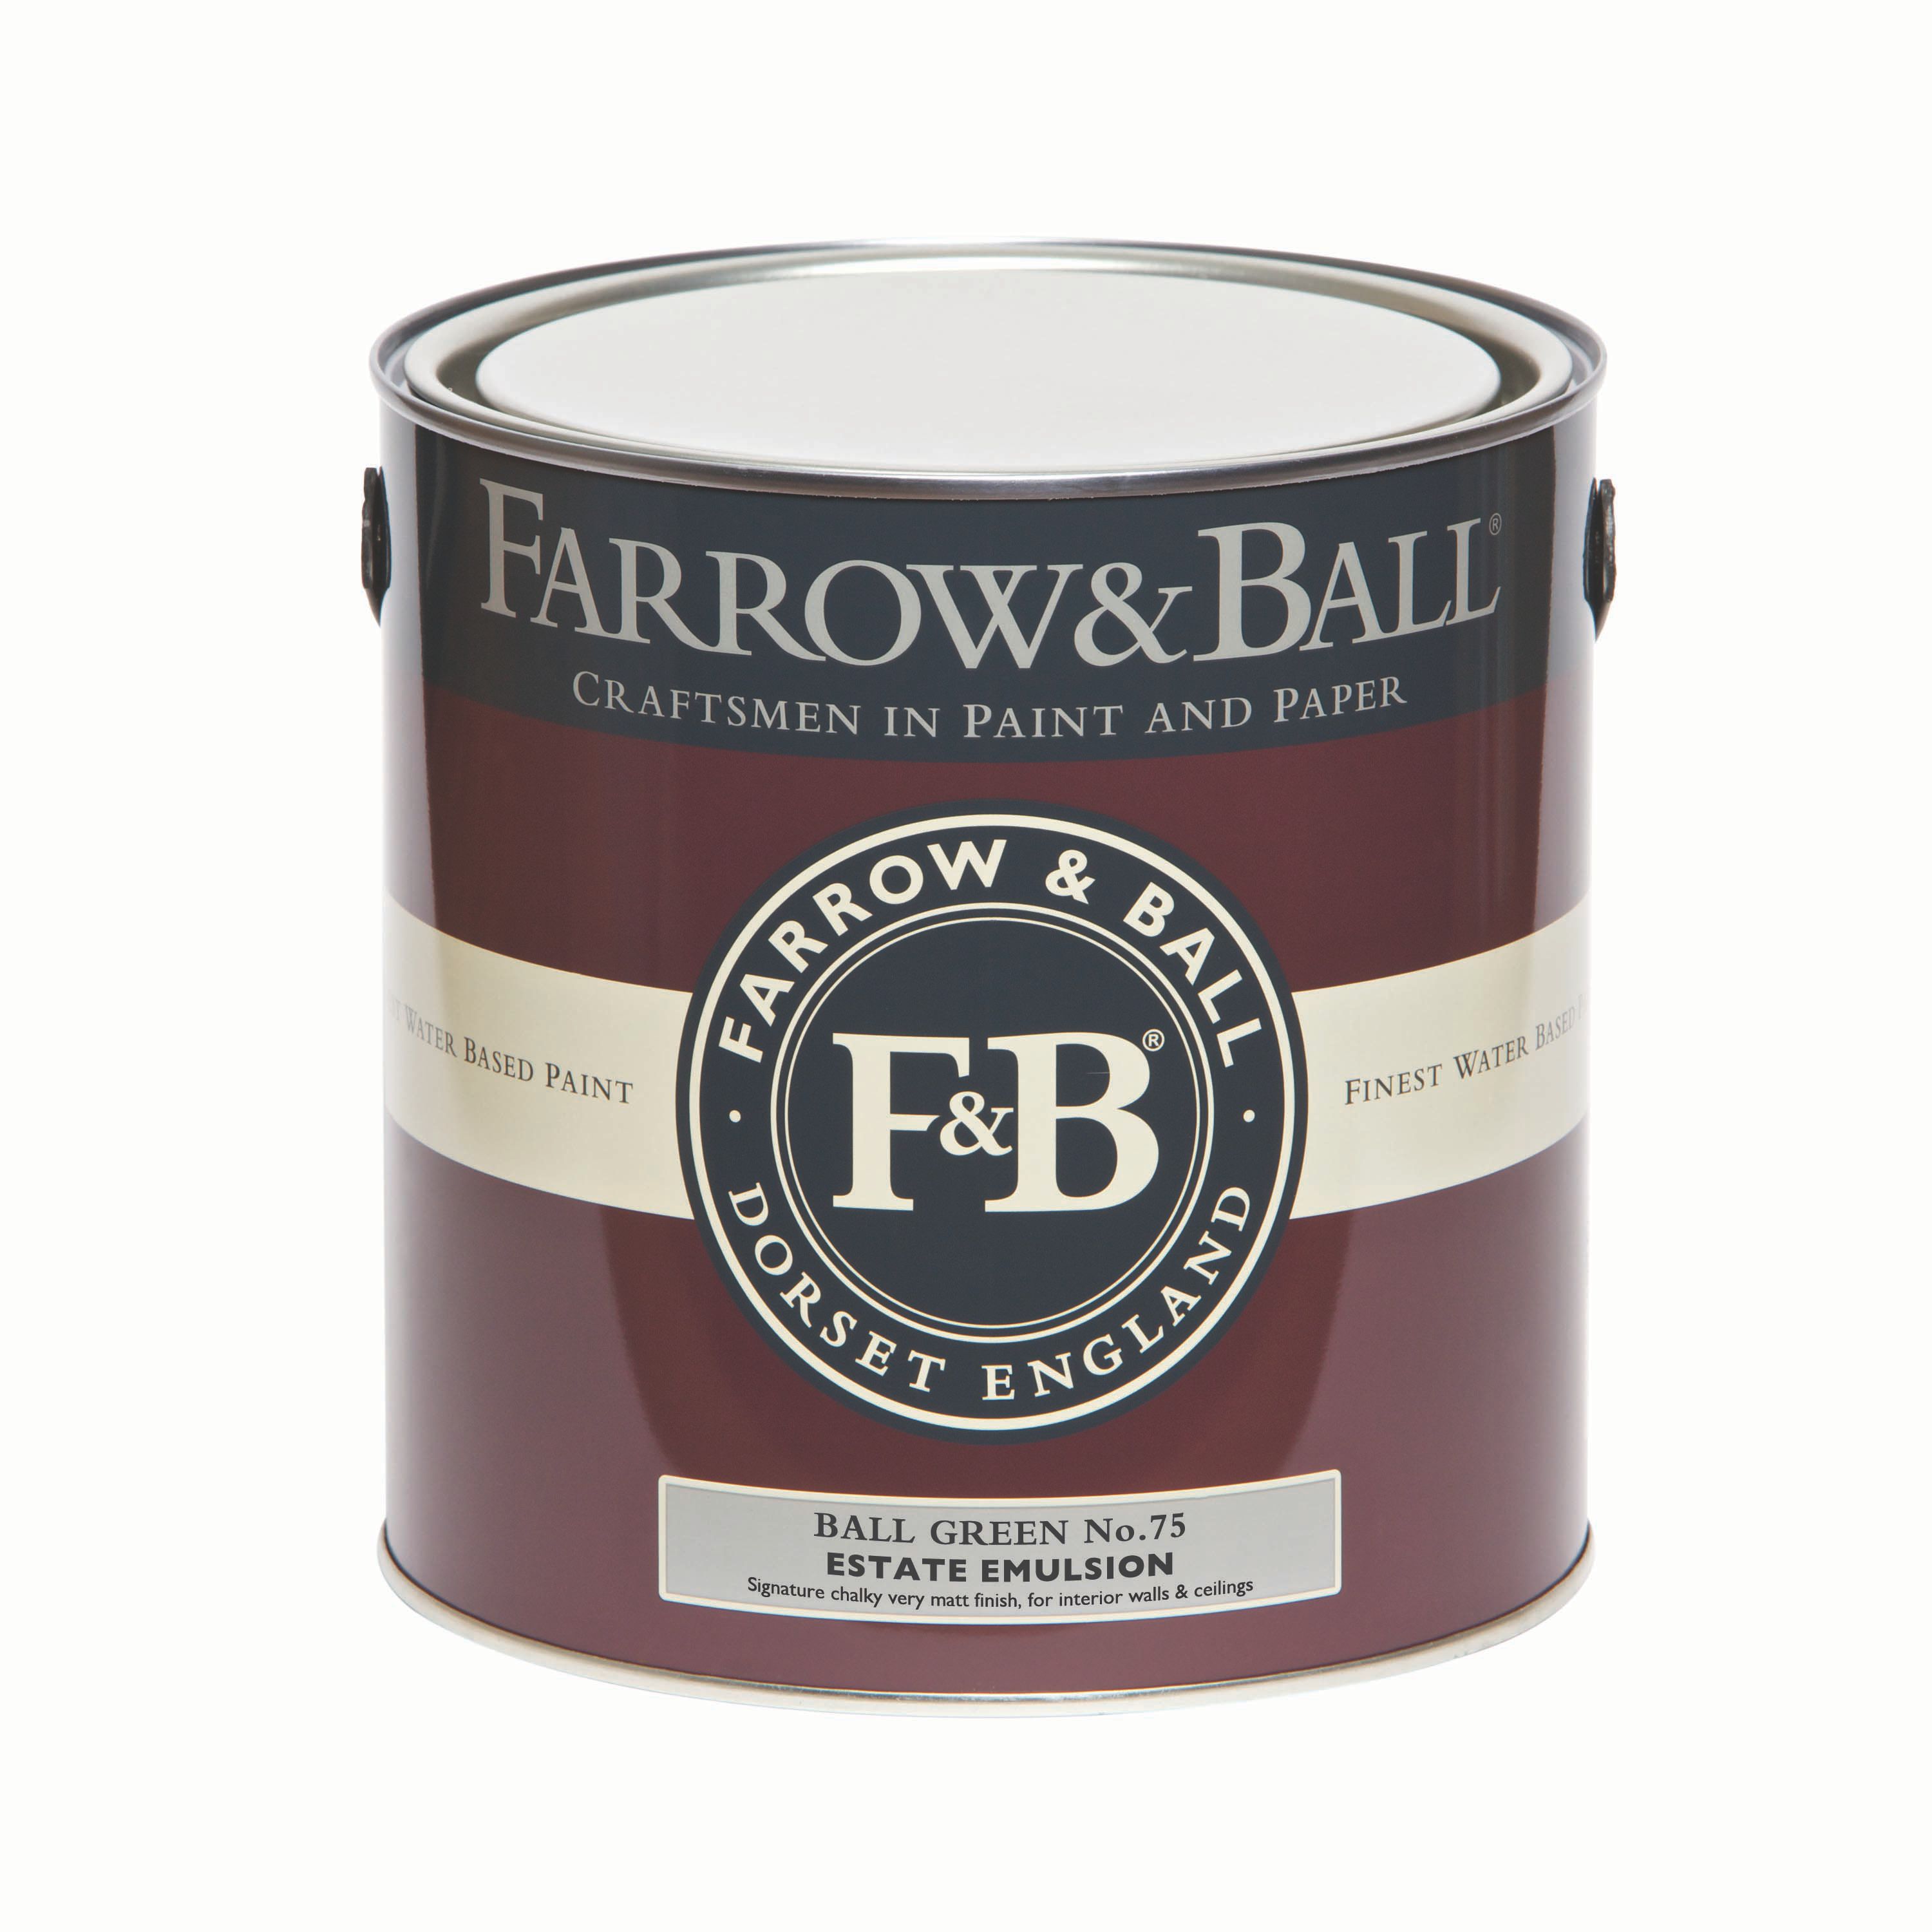 Farrow & Ball Estate Ball green No.75 Matt Emulsion paint, 2.5L